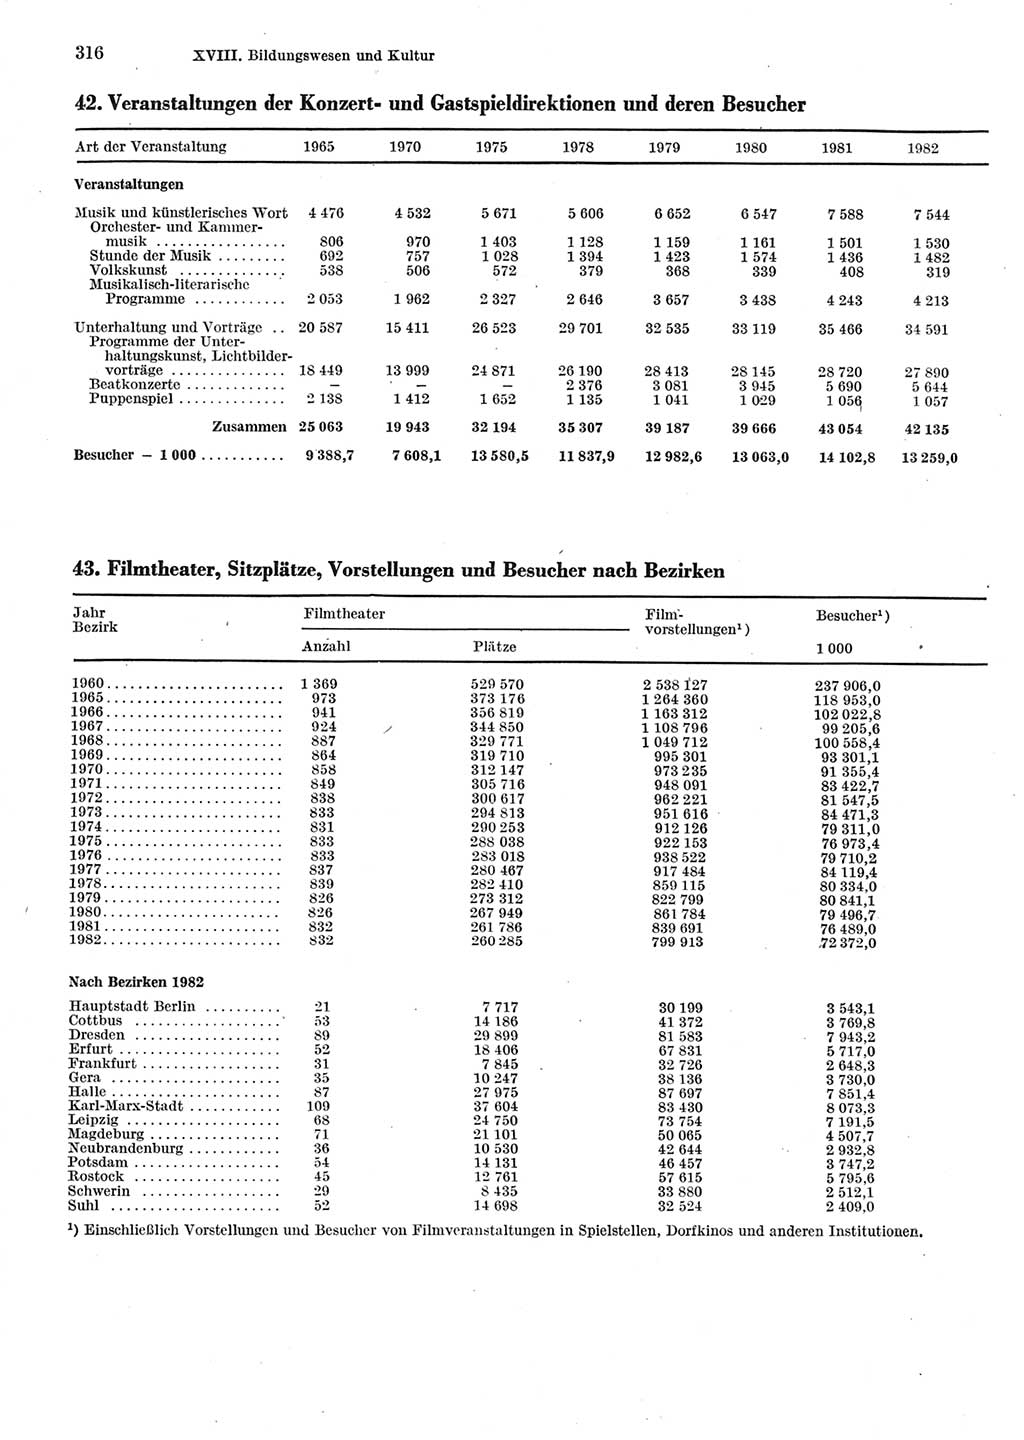 Statistisches Jahrbuch der Deutschen Demokratischen Republik (DDR) 1983, Seite 316 (Stat. Jb. DDR 1983, S. 316)